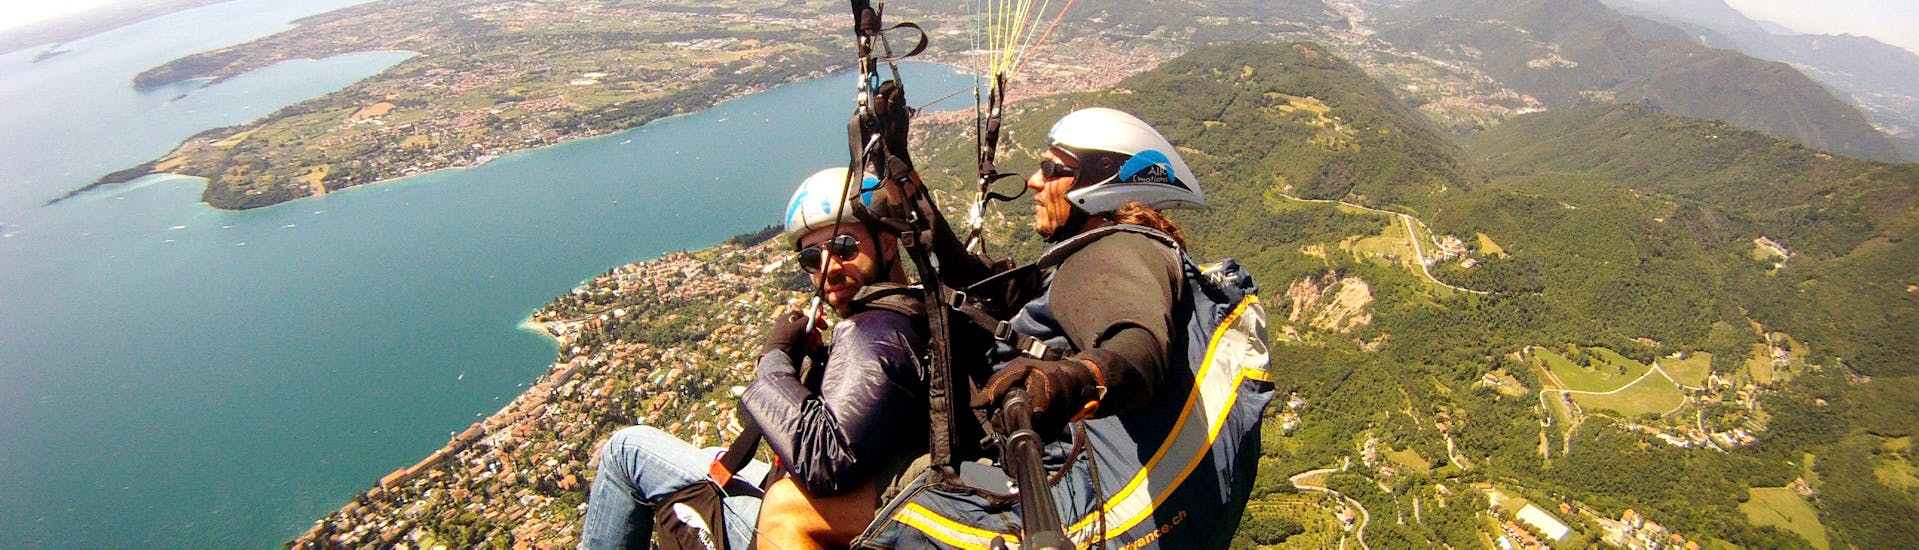 Vol en parapente panoramique à Gardone Riviera (dès 6 ans) - Lac de Garde.